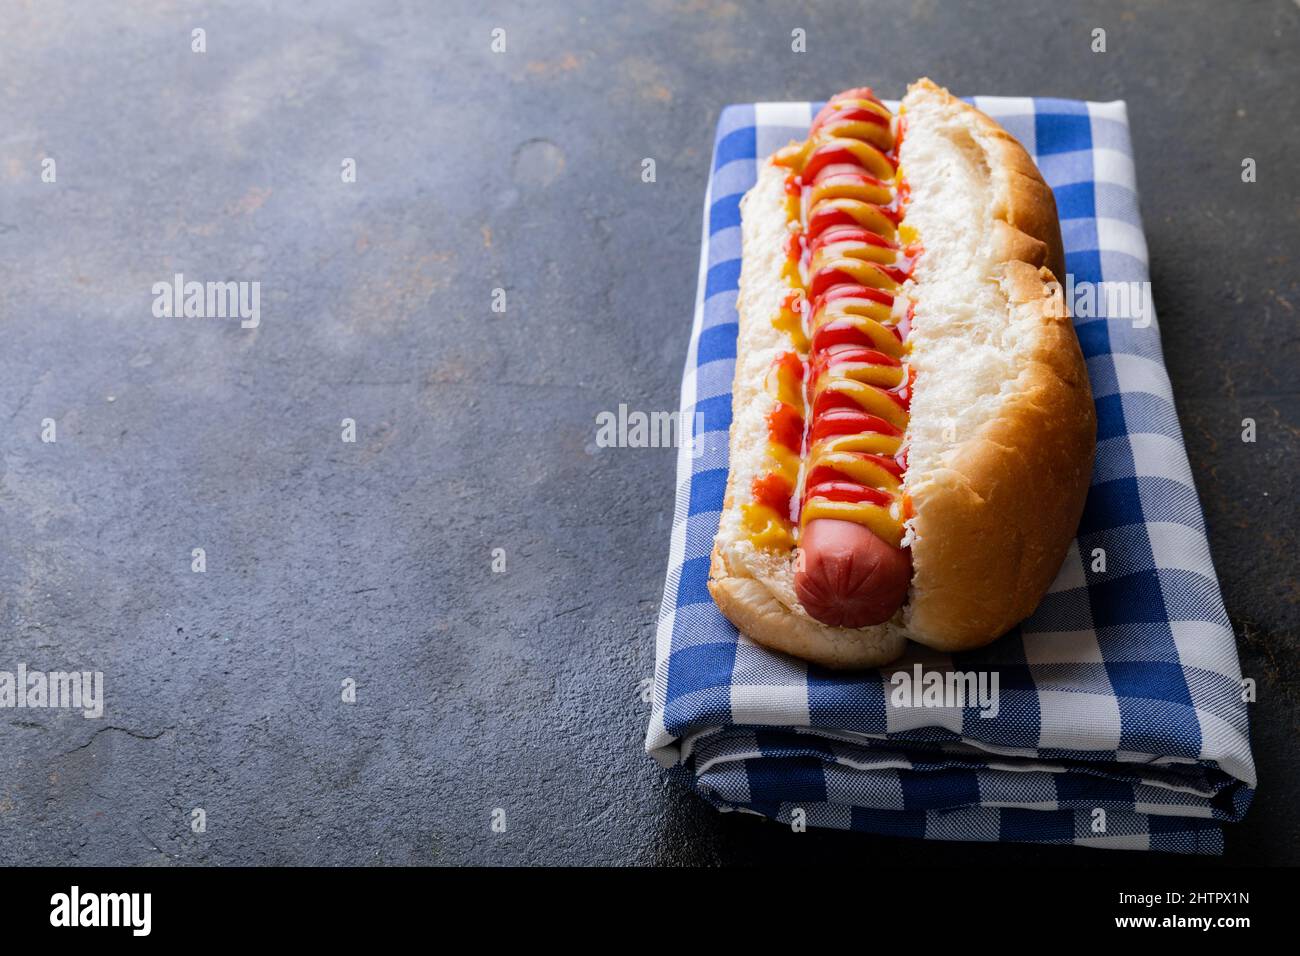 Nahaufnahme von Hot Dog mit Tomate und musterter Sauce auf karierter Serviette am Tisch Stockfoto